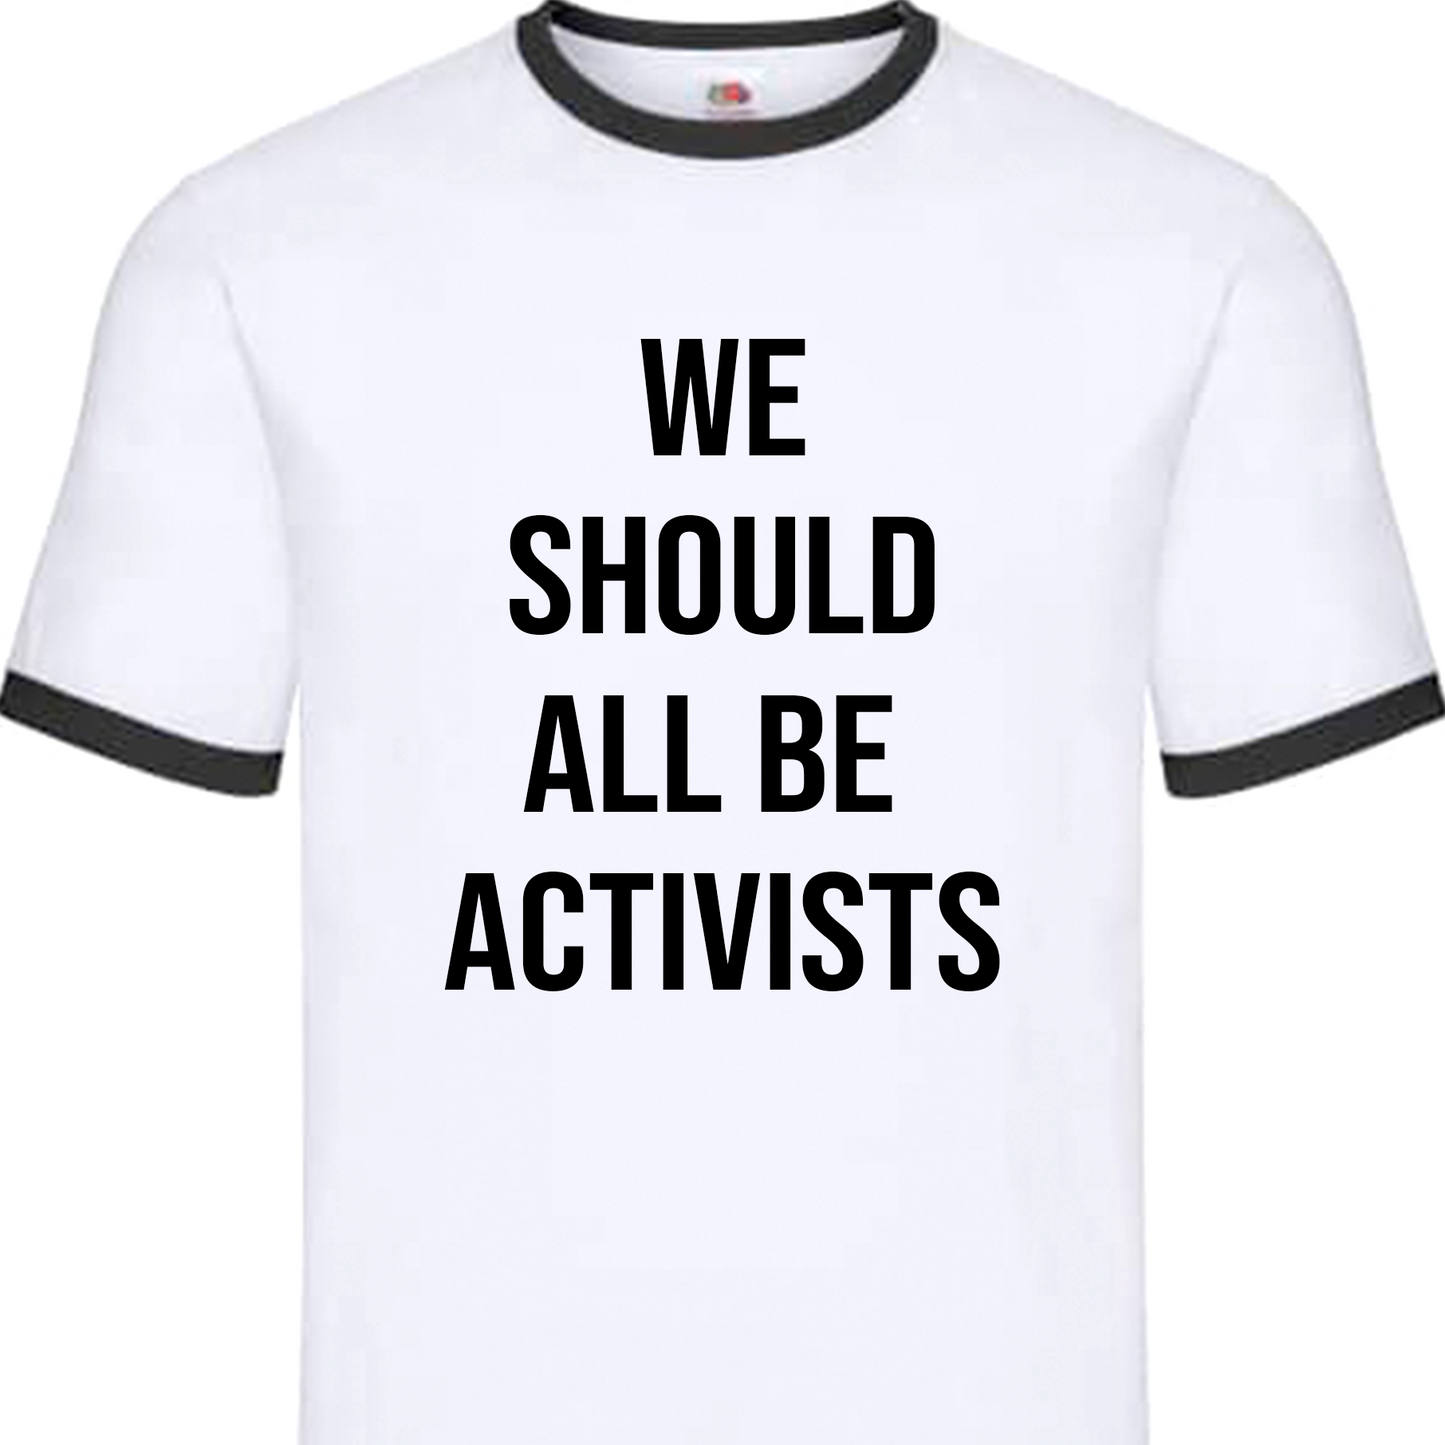 "WE SHOULD ALL BE ACTIVISTS" // Shirt